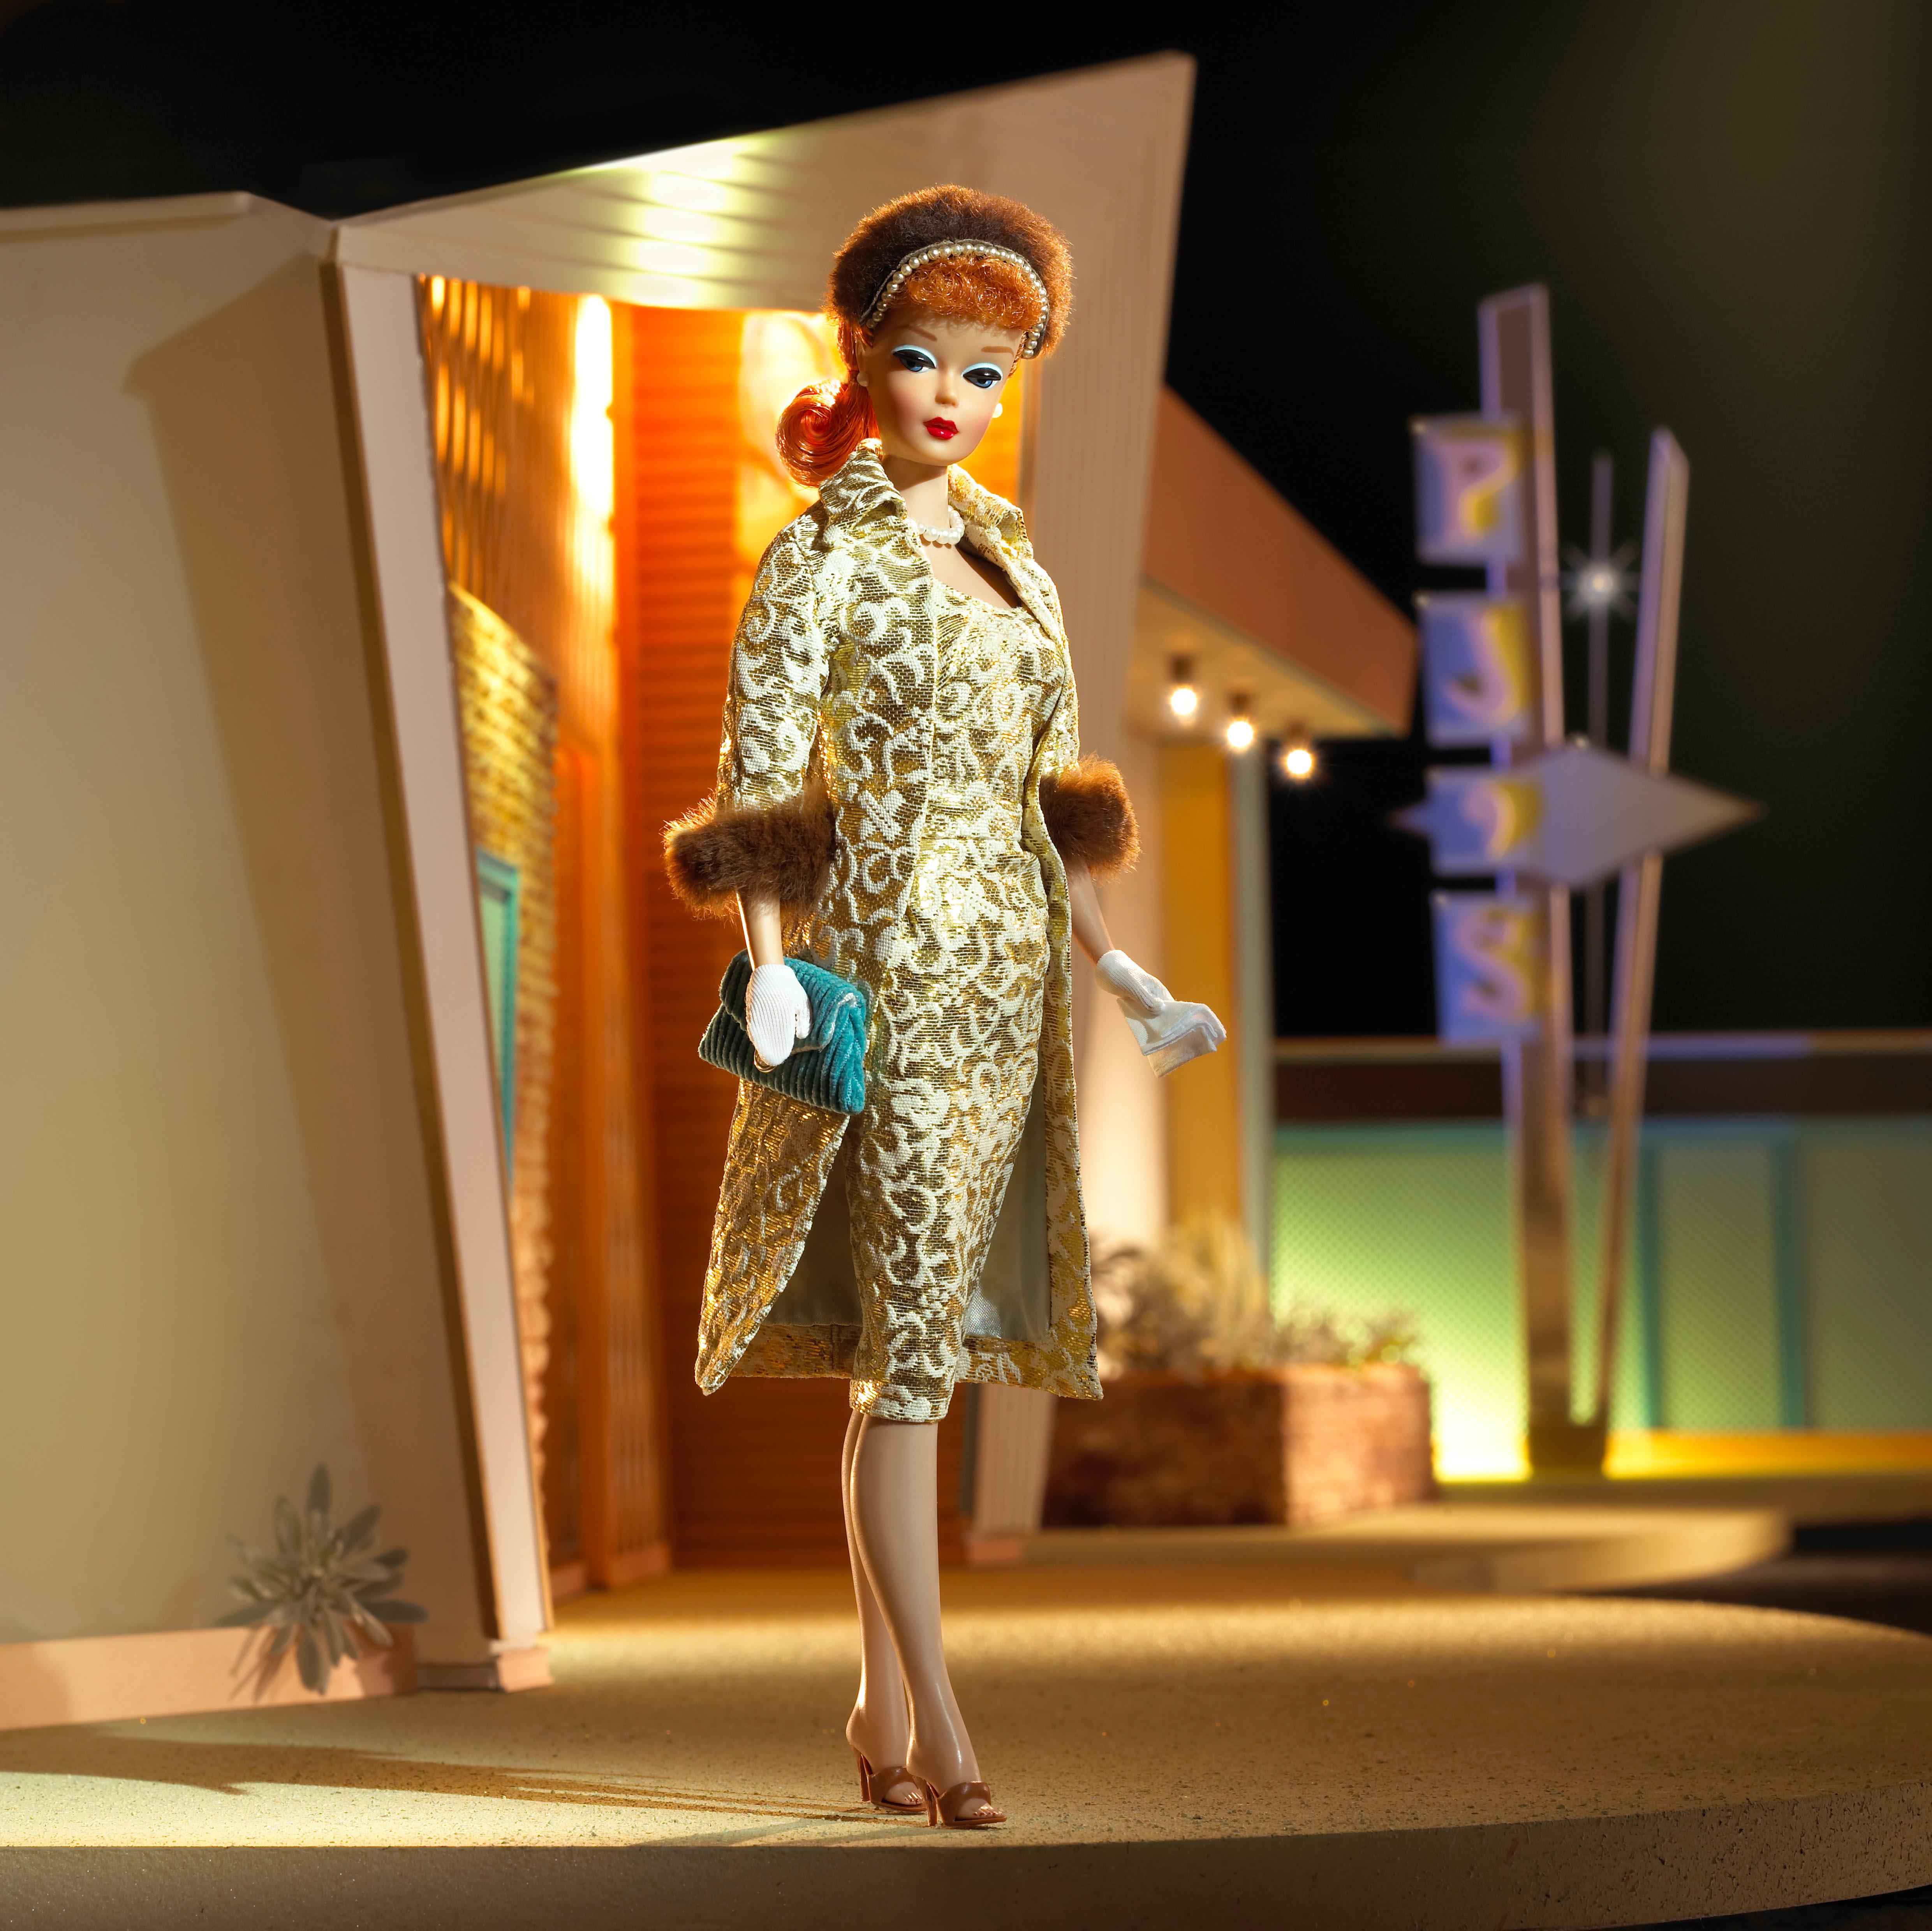 Barbie indossa l'outifit 'Evening Splendour', (Collectors edition). L''Evening Splendour' (1959) è uno degli outfit più eleganti e ricercati del guardaroba di Barbie, qui immortalata in una riedizione per la linea 'Collectors' (foto ©Mattel Inc.)